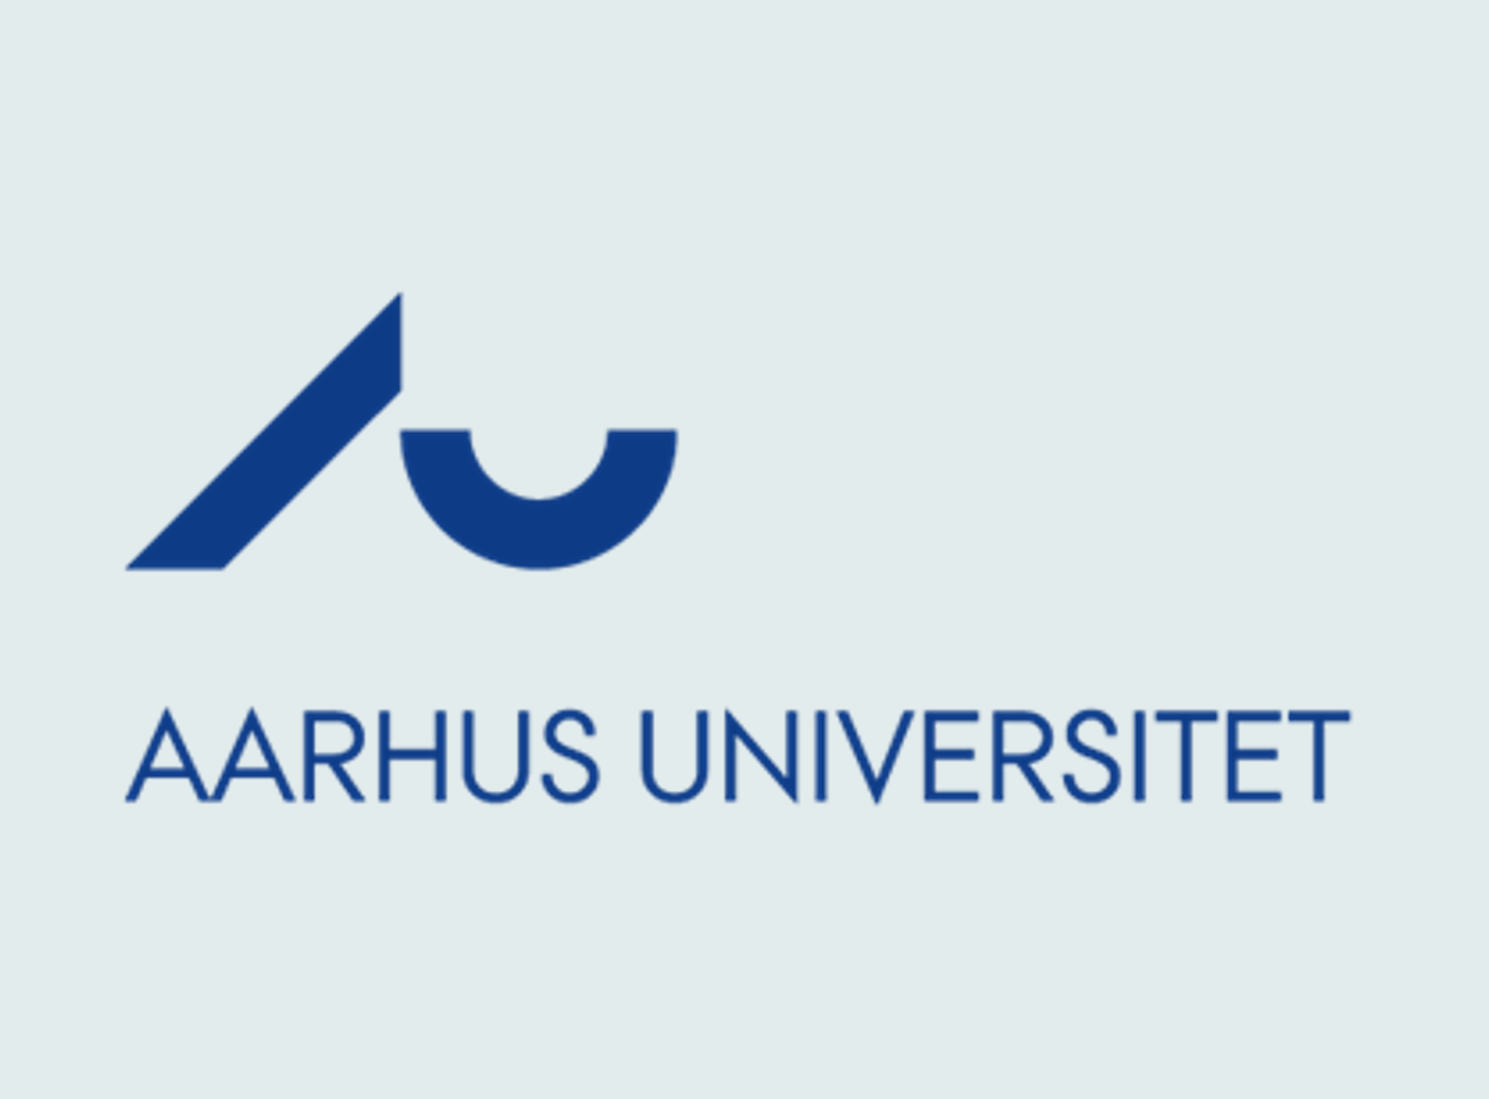 Aarhus universistet logo